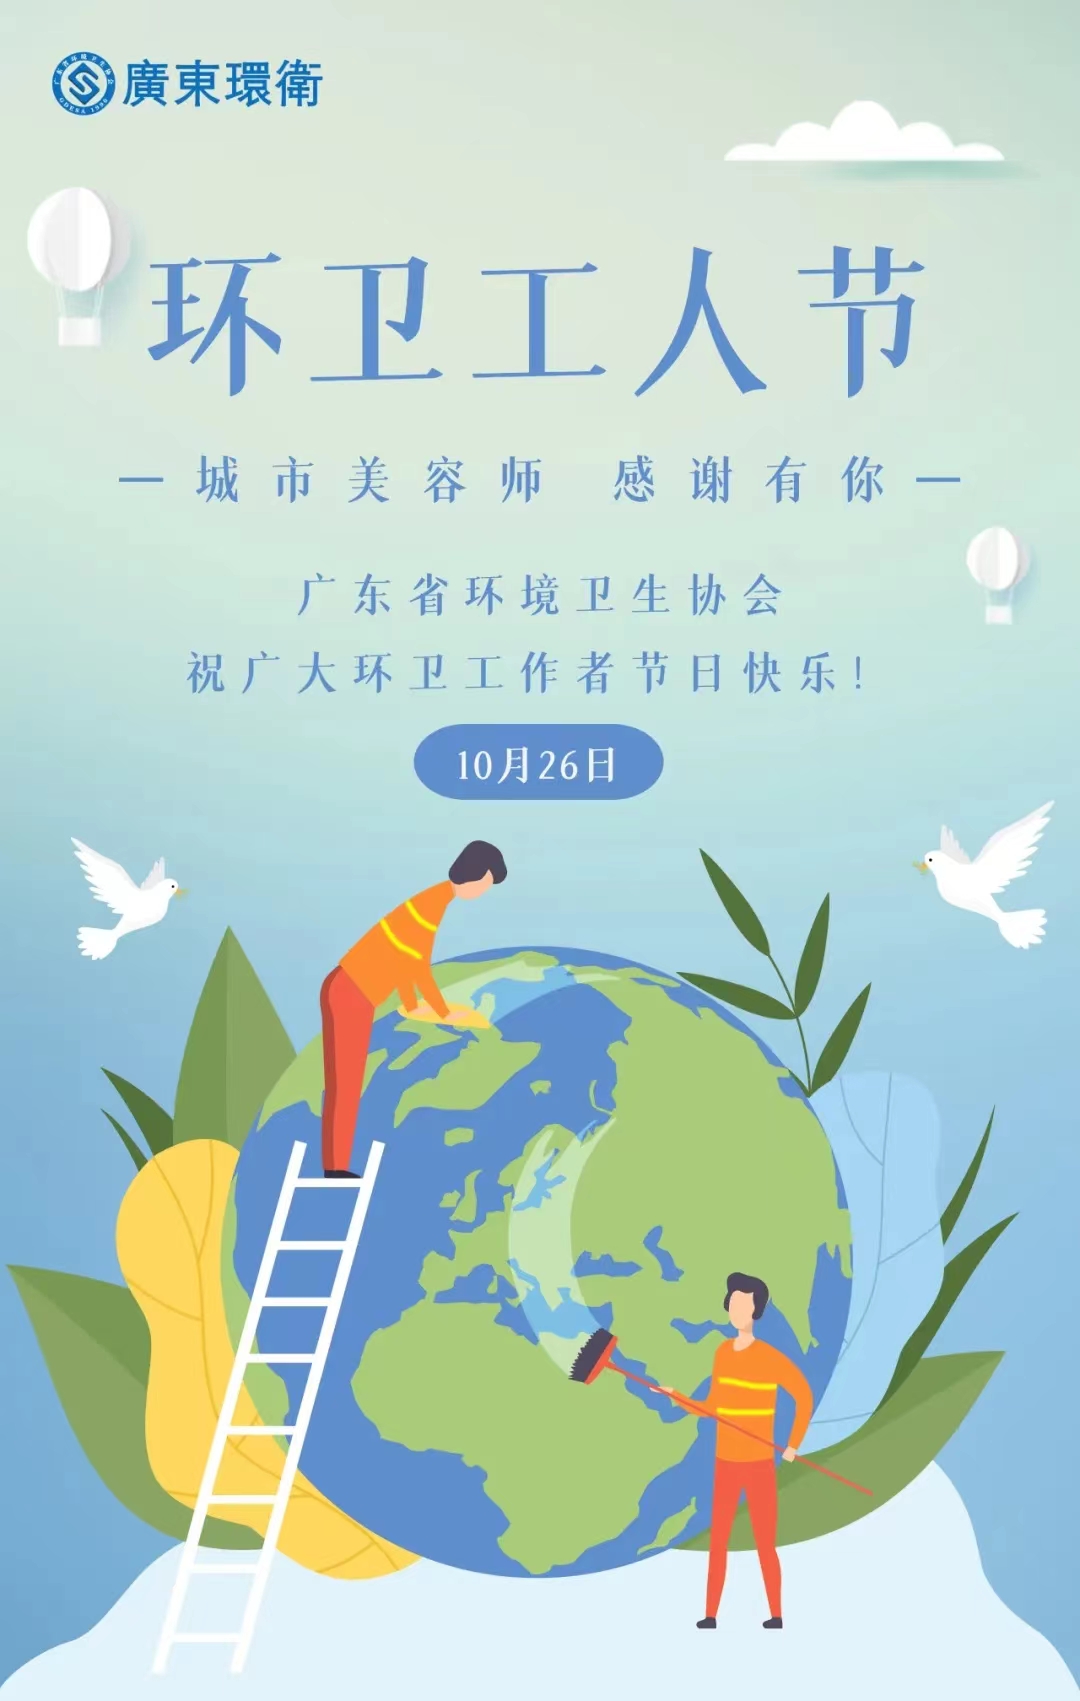 第29个广东省环卫工人节 | 广东省环境卫生协会致全省环卫工作者的慰问信